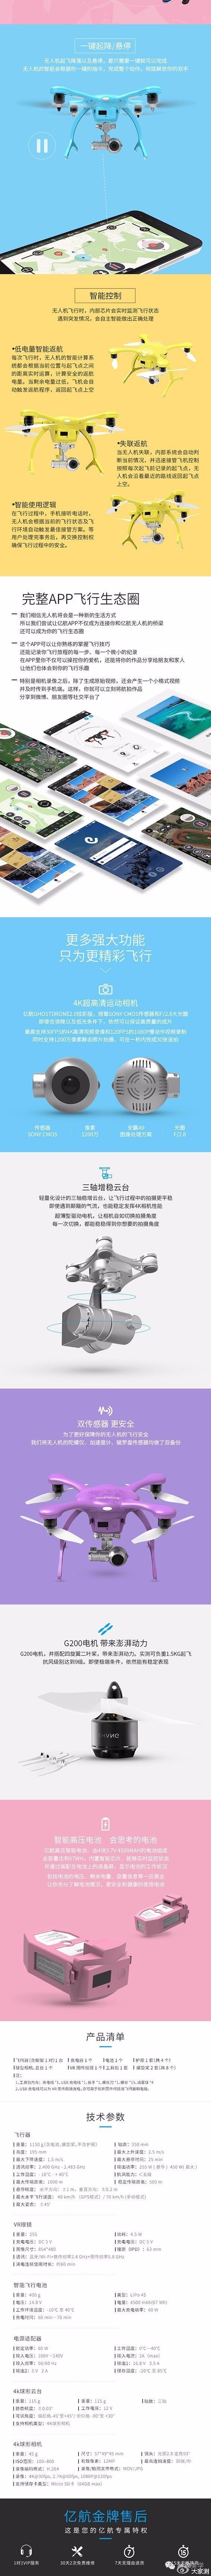 【j2开奖】亿航无人机带神奇VR视角 价值5999元免费申请 「大家测」